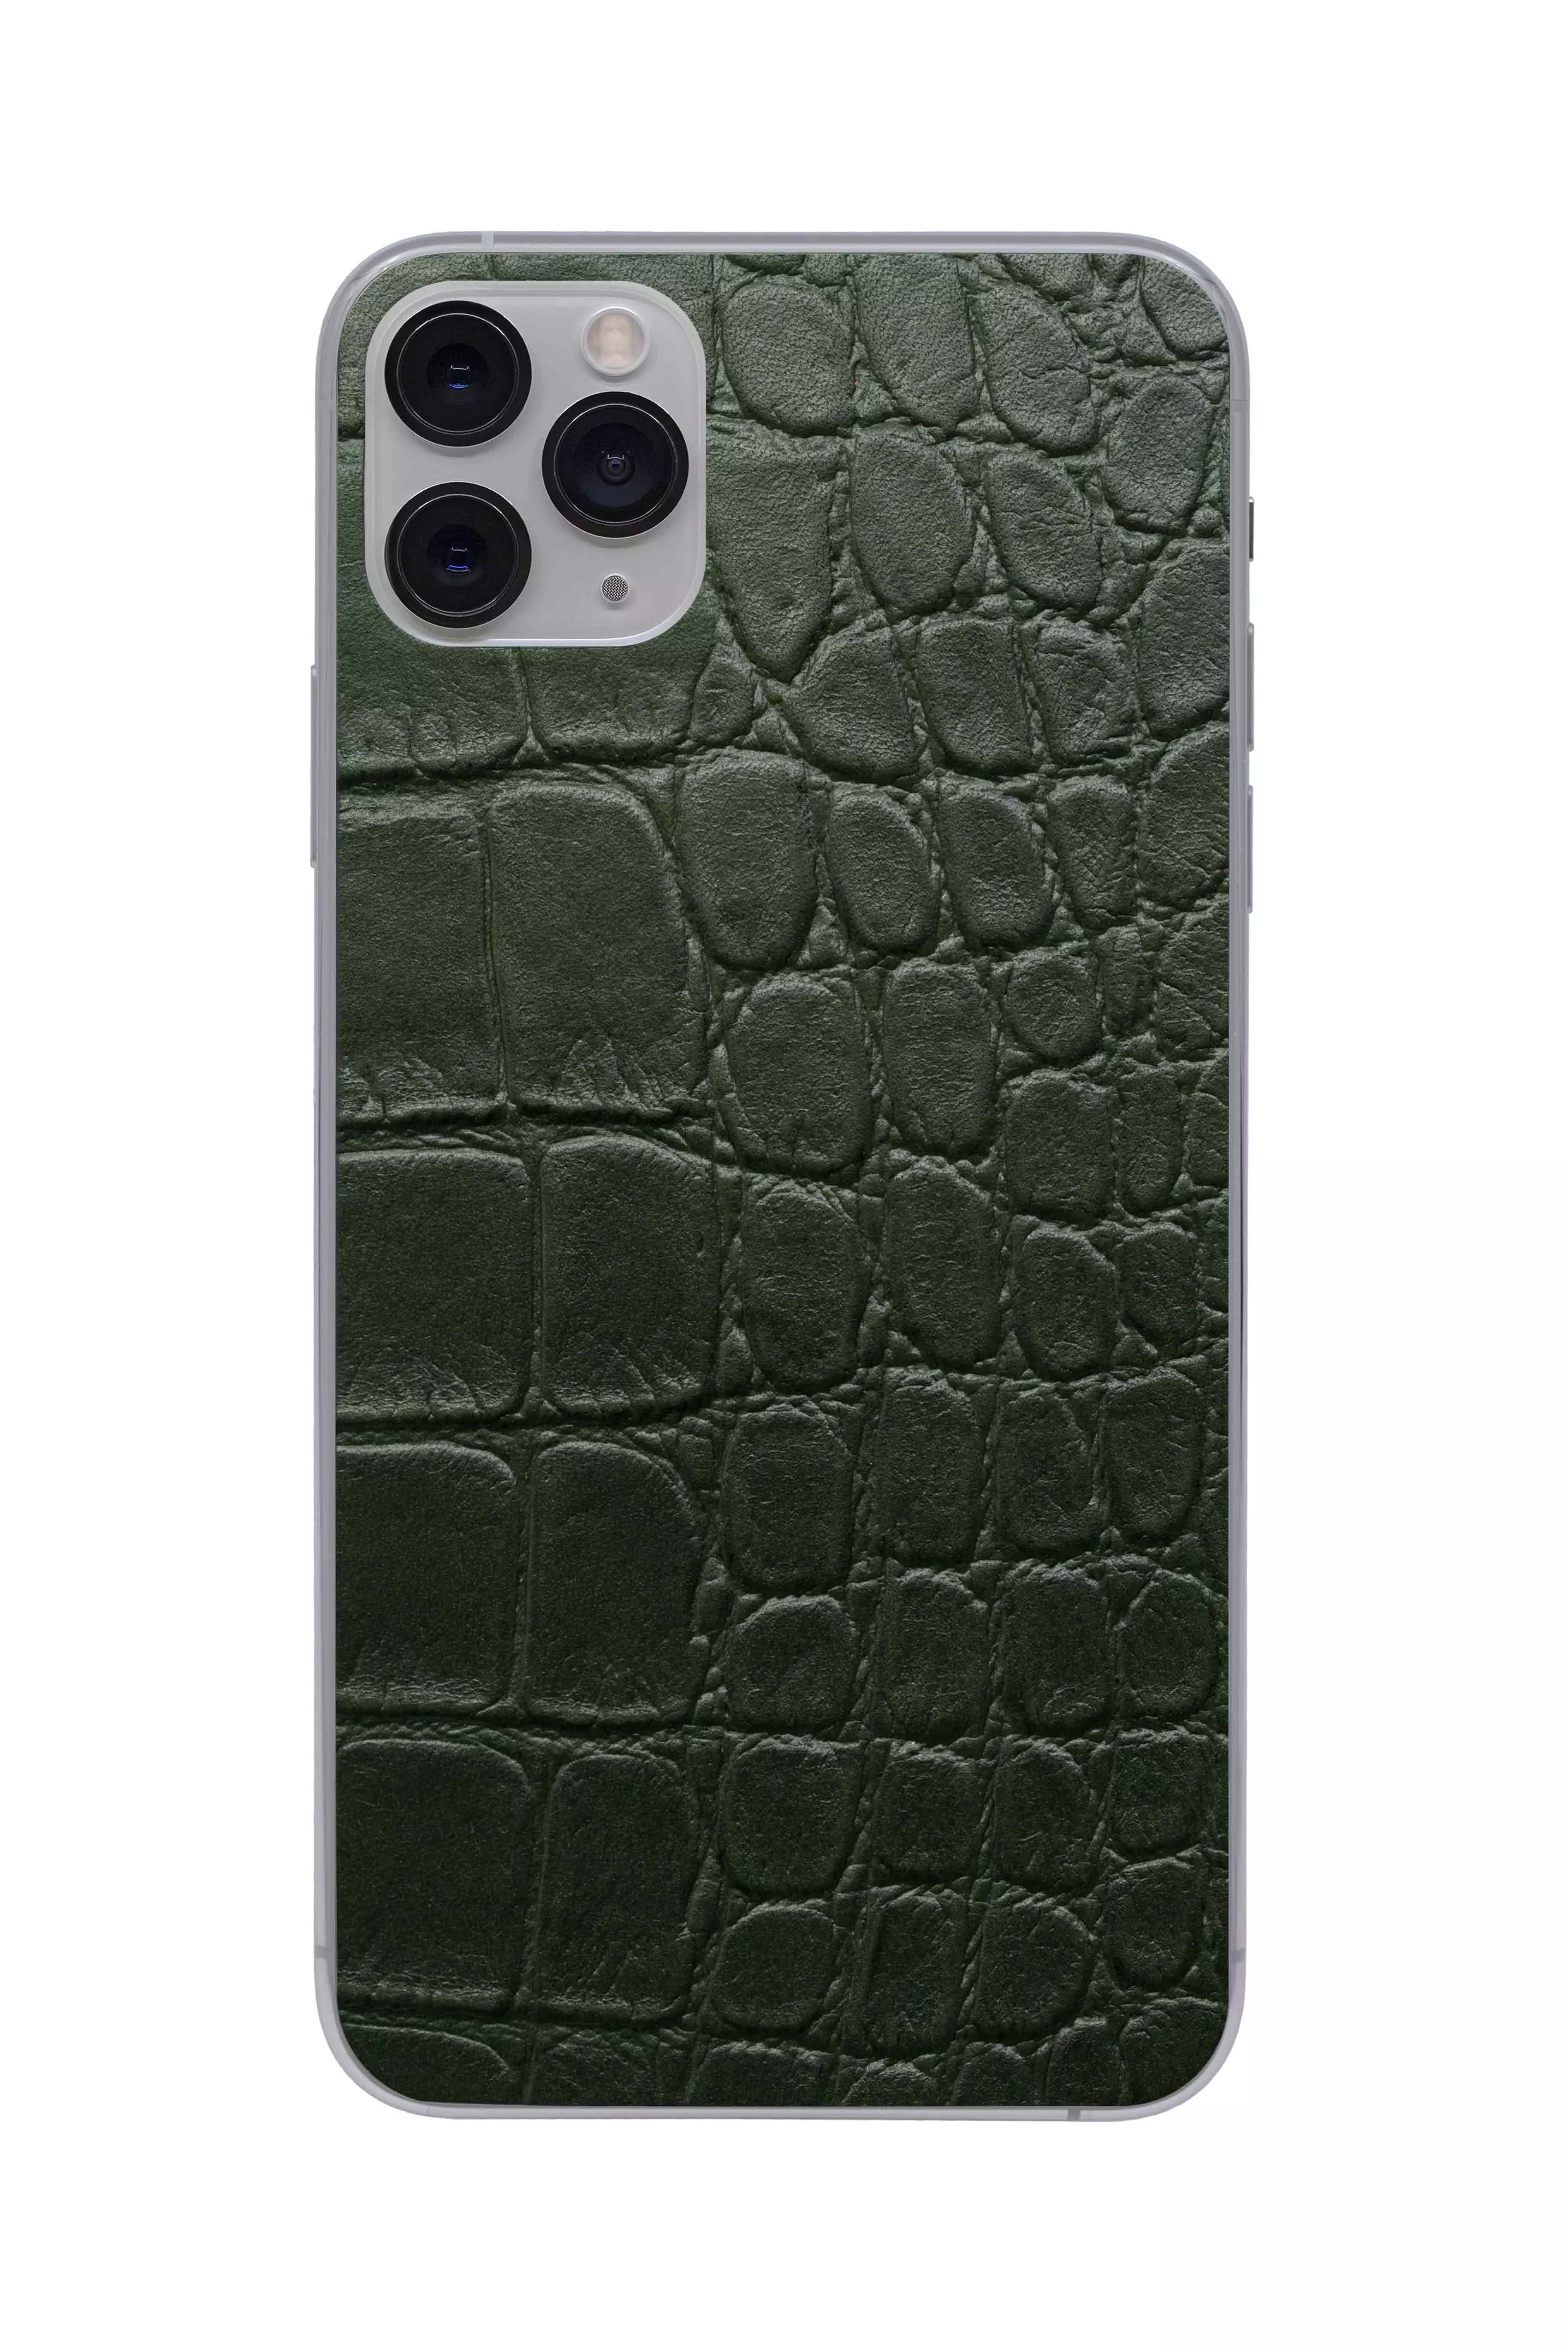 Купить Защитная наклейка из натуральной кожи для iPhone 11 Pro Max, Вид Зеленый 2 в Сочи. Вид 1